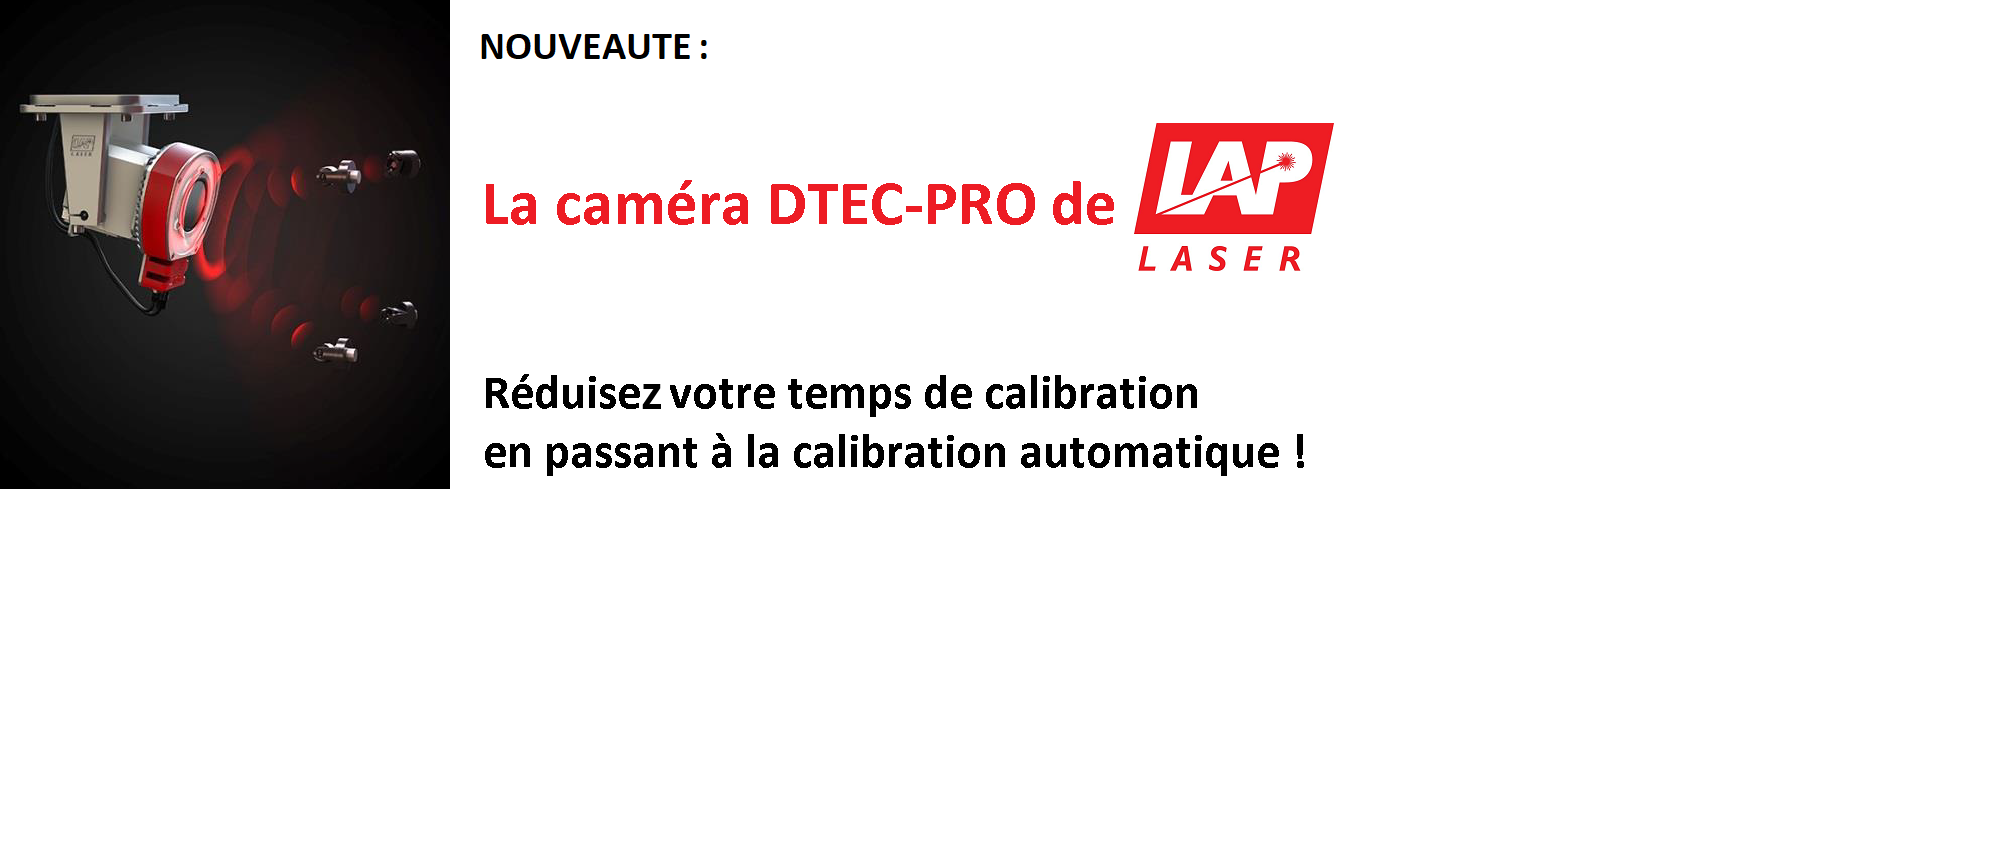 Nouveauté : DTEC-PRO de LAP Laser